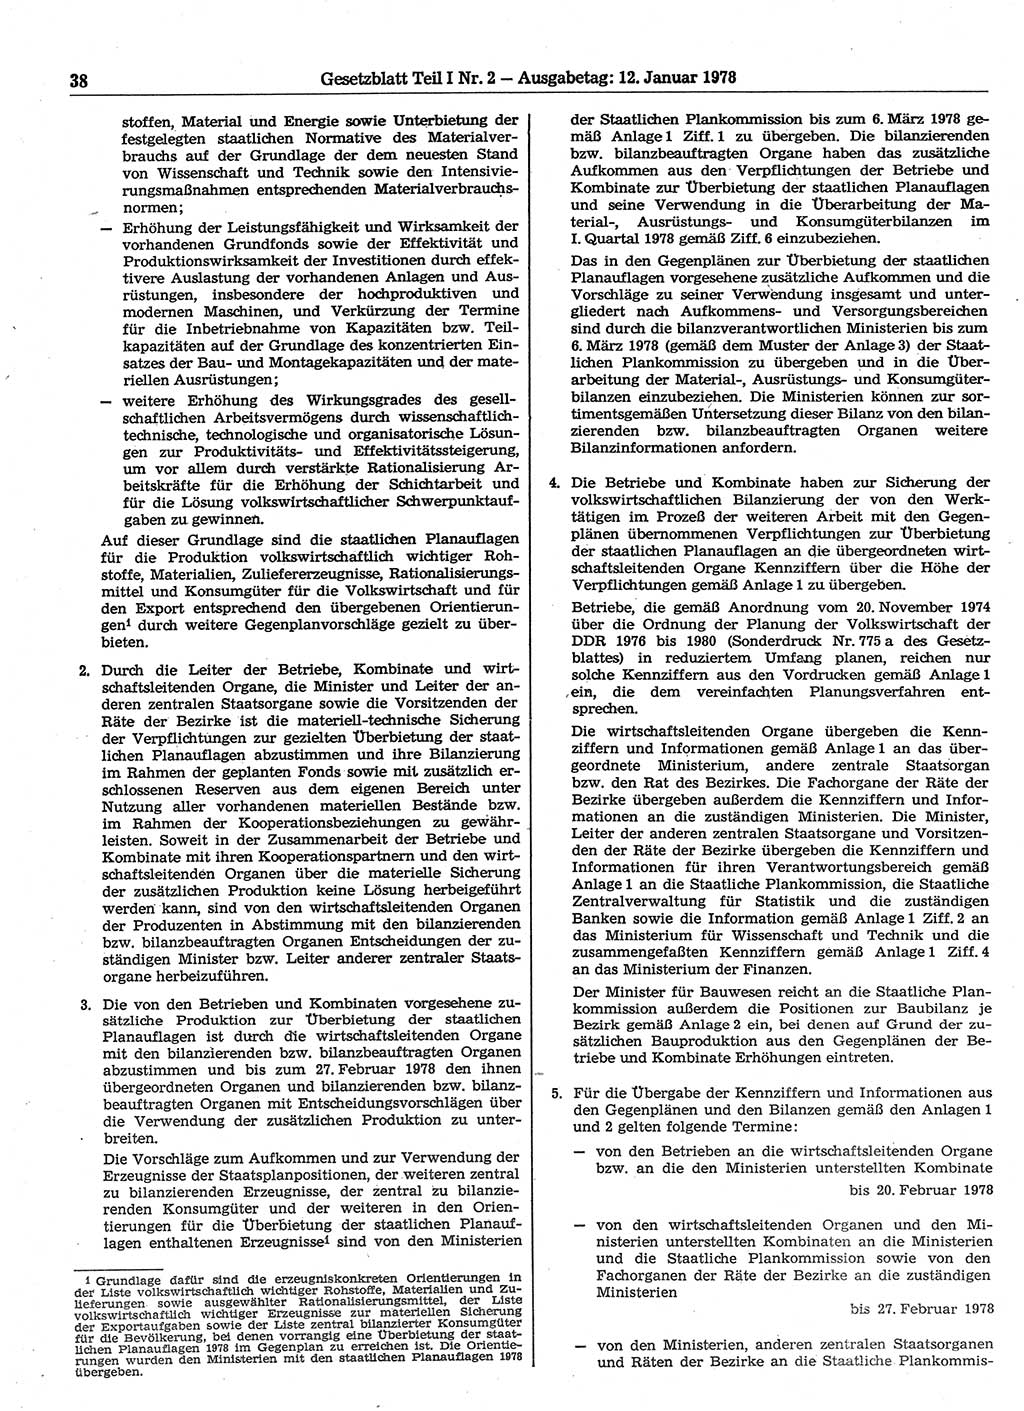 Gesetzblatt (GBl.) der Deutschen Demokratischen Republik (DDR) Teil Ⅰ 1978, Seite 38 (GBl. DDR Ⅰ 1978, S. 38)